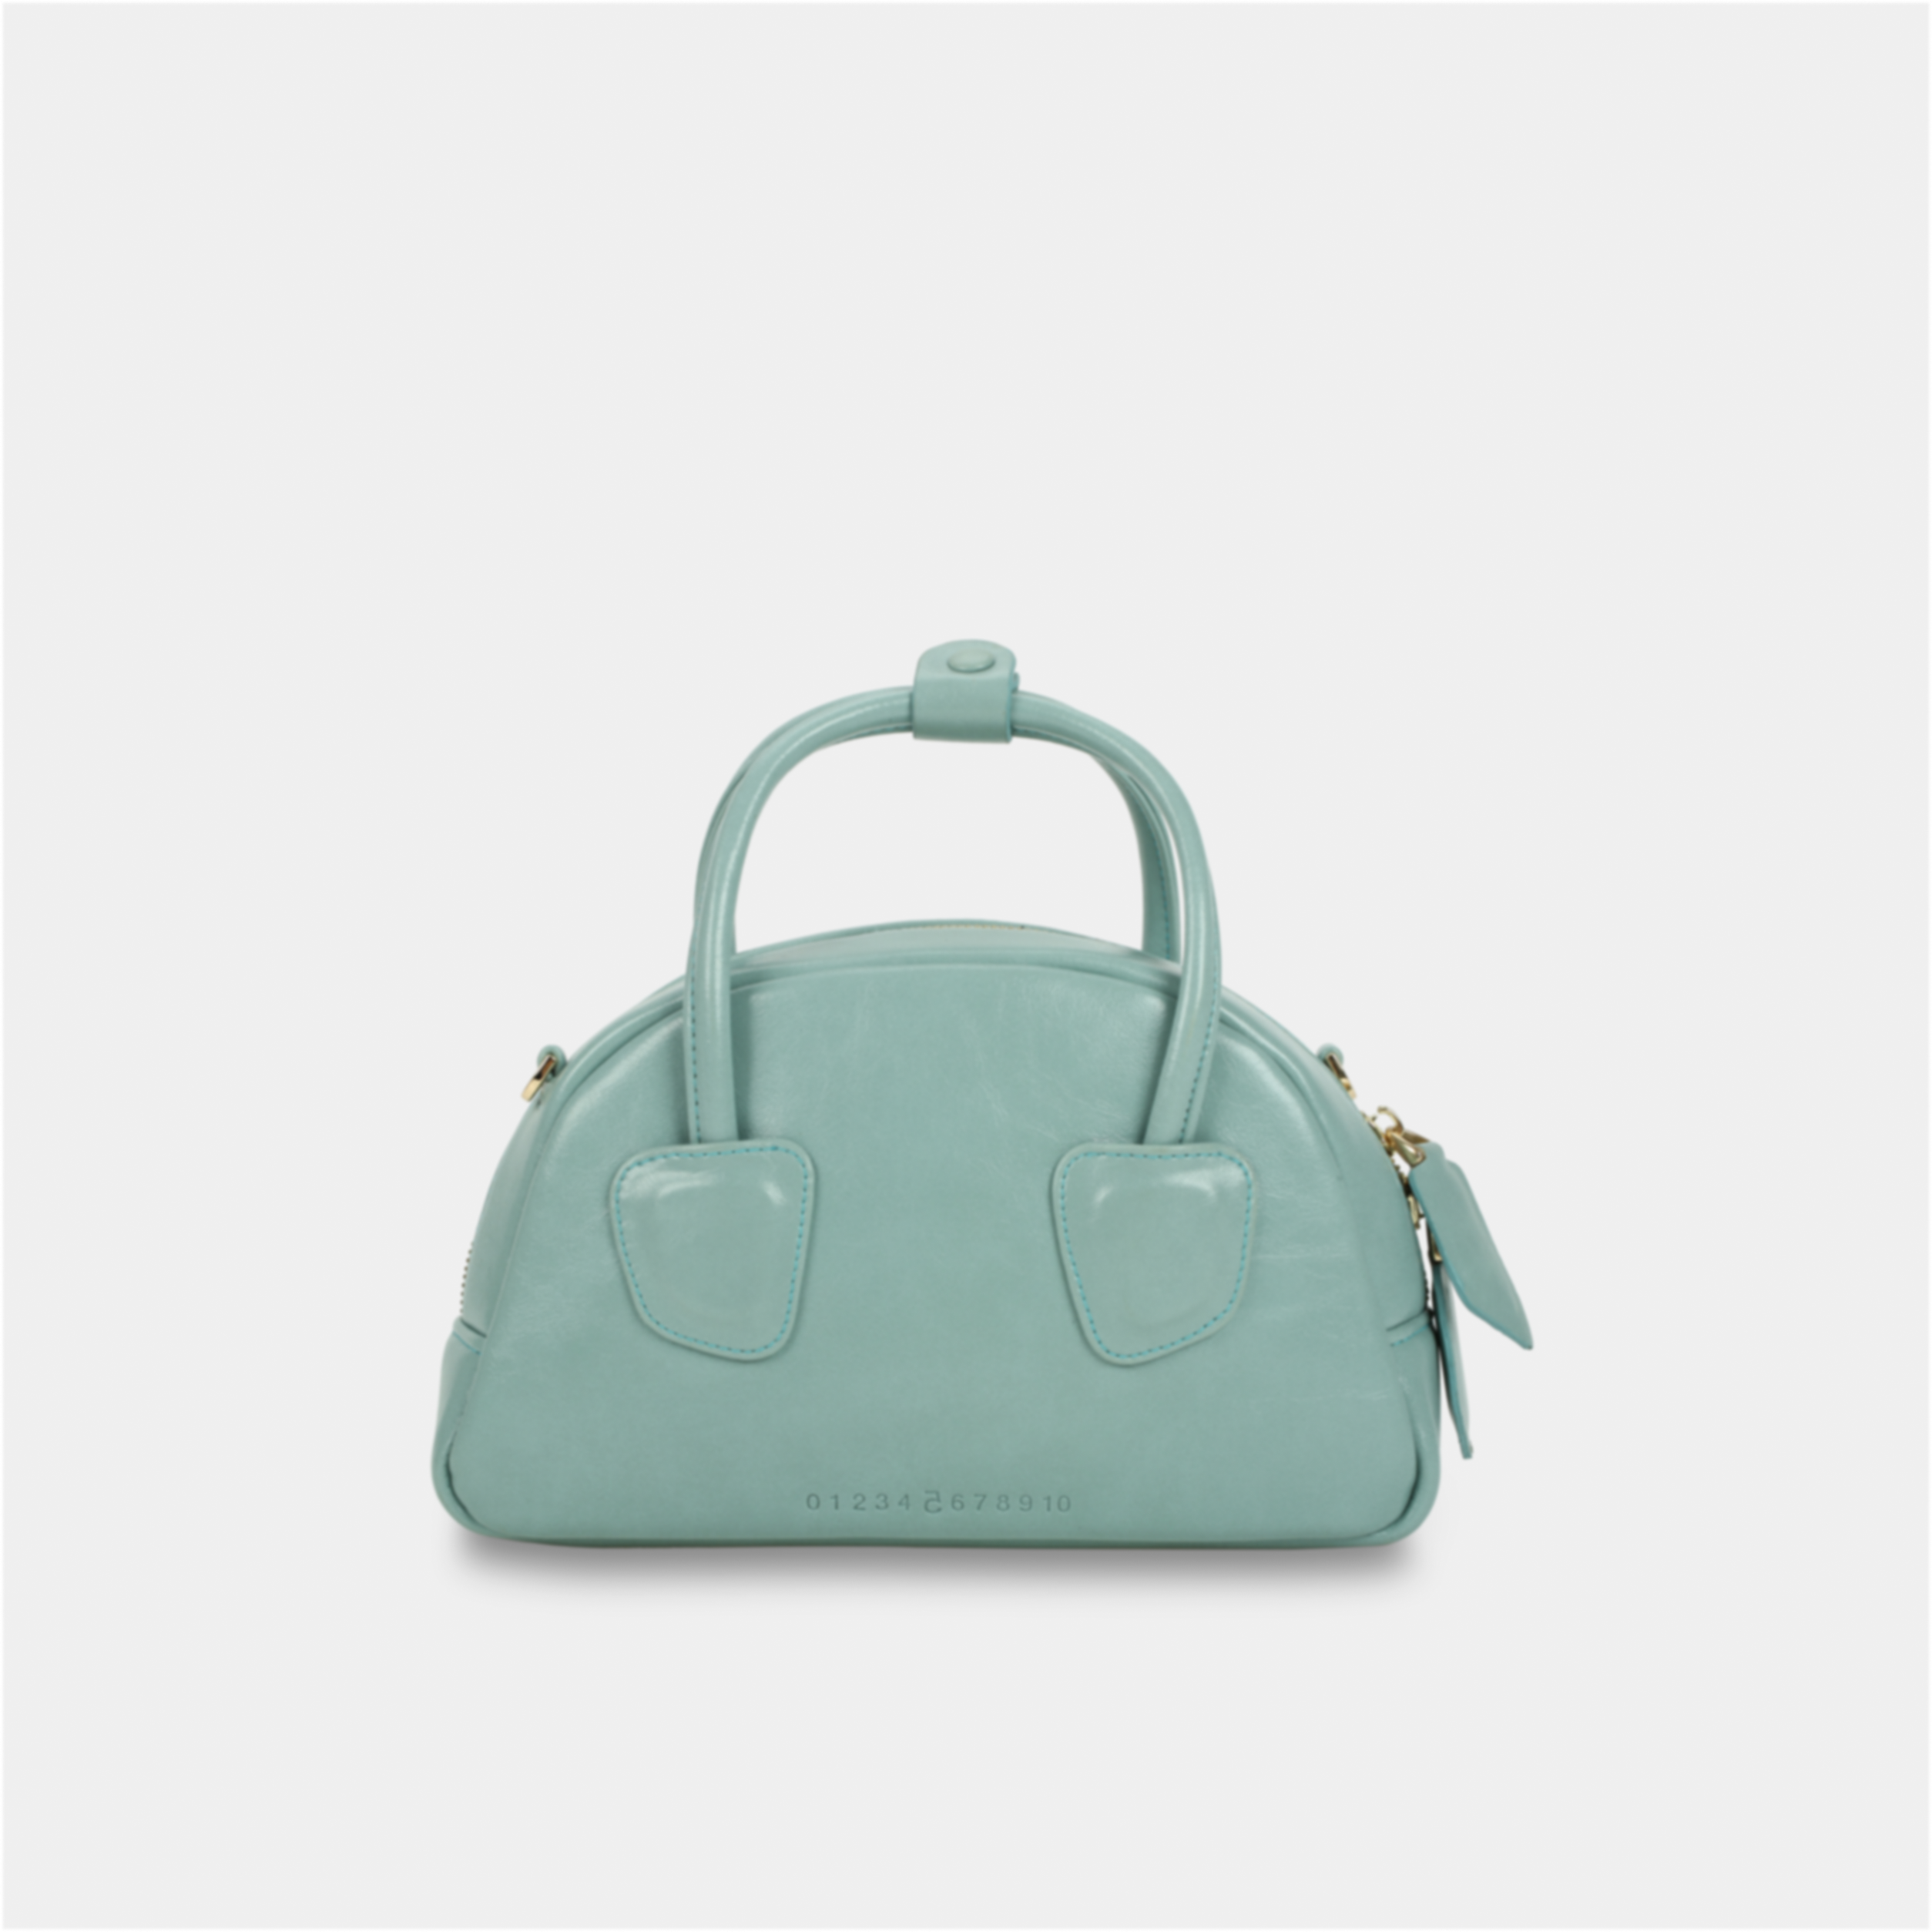 TACOS handbag in pastel blue color large size (M)